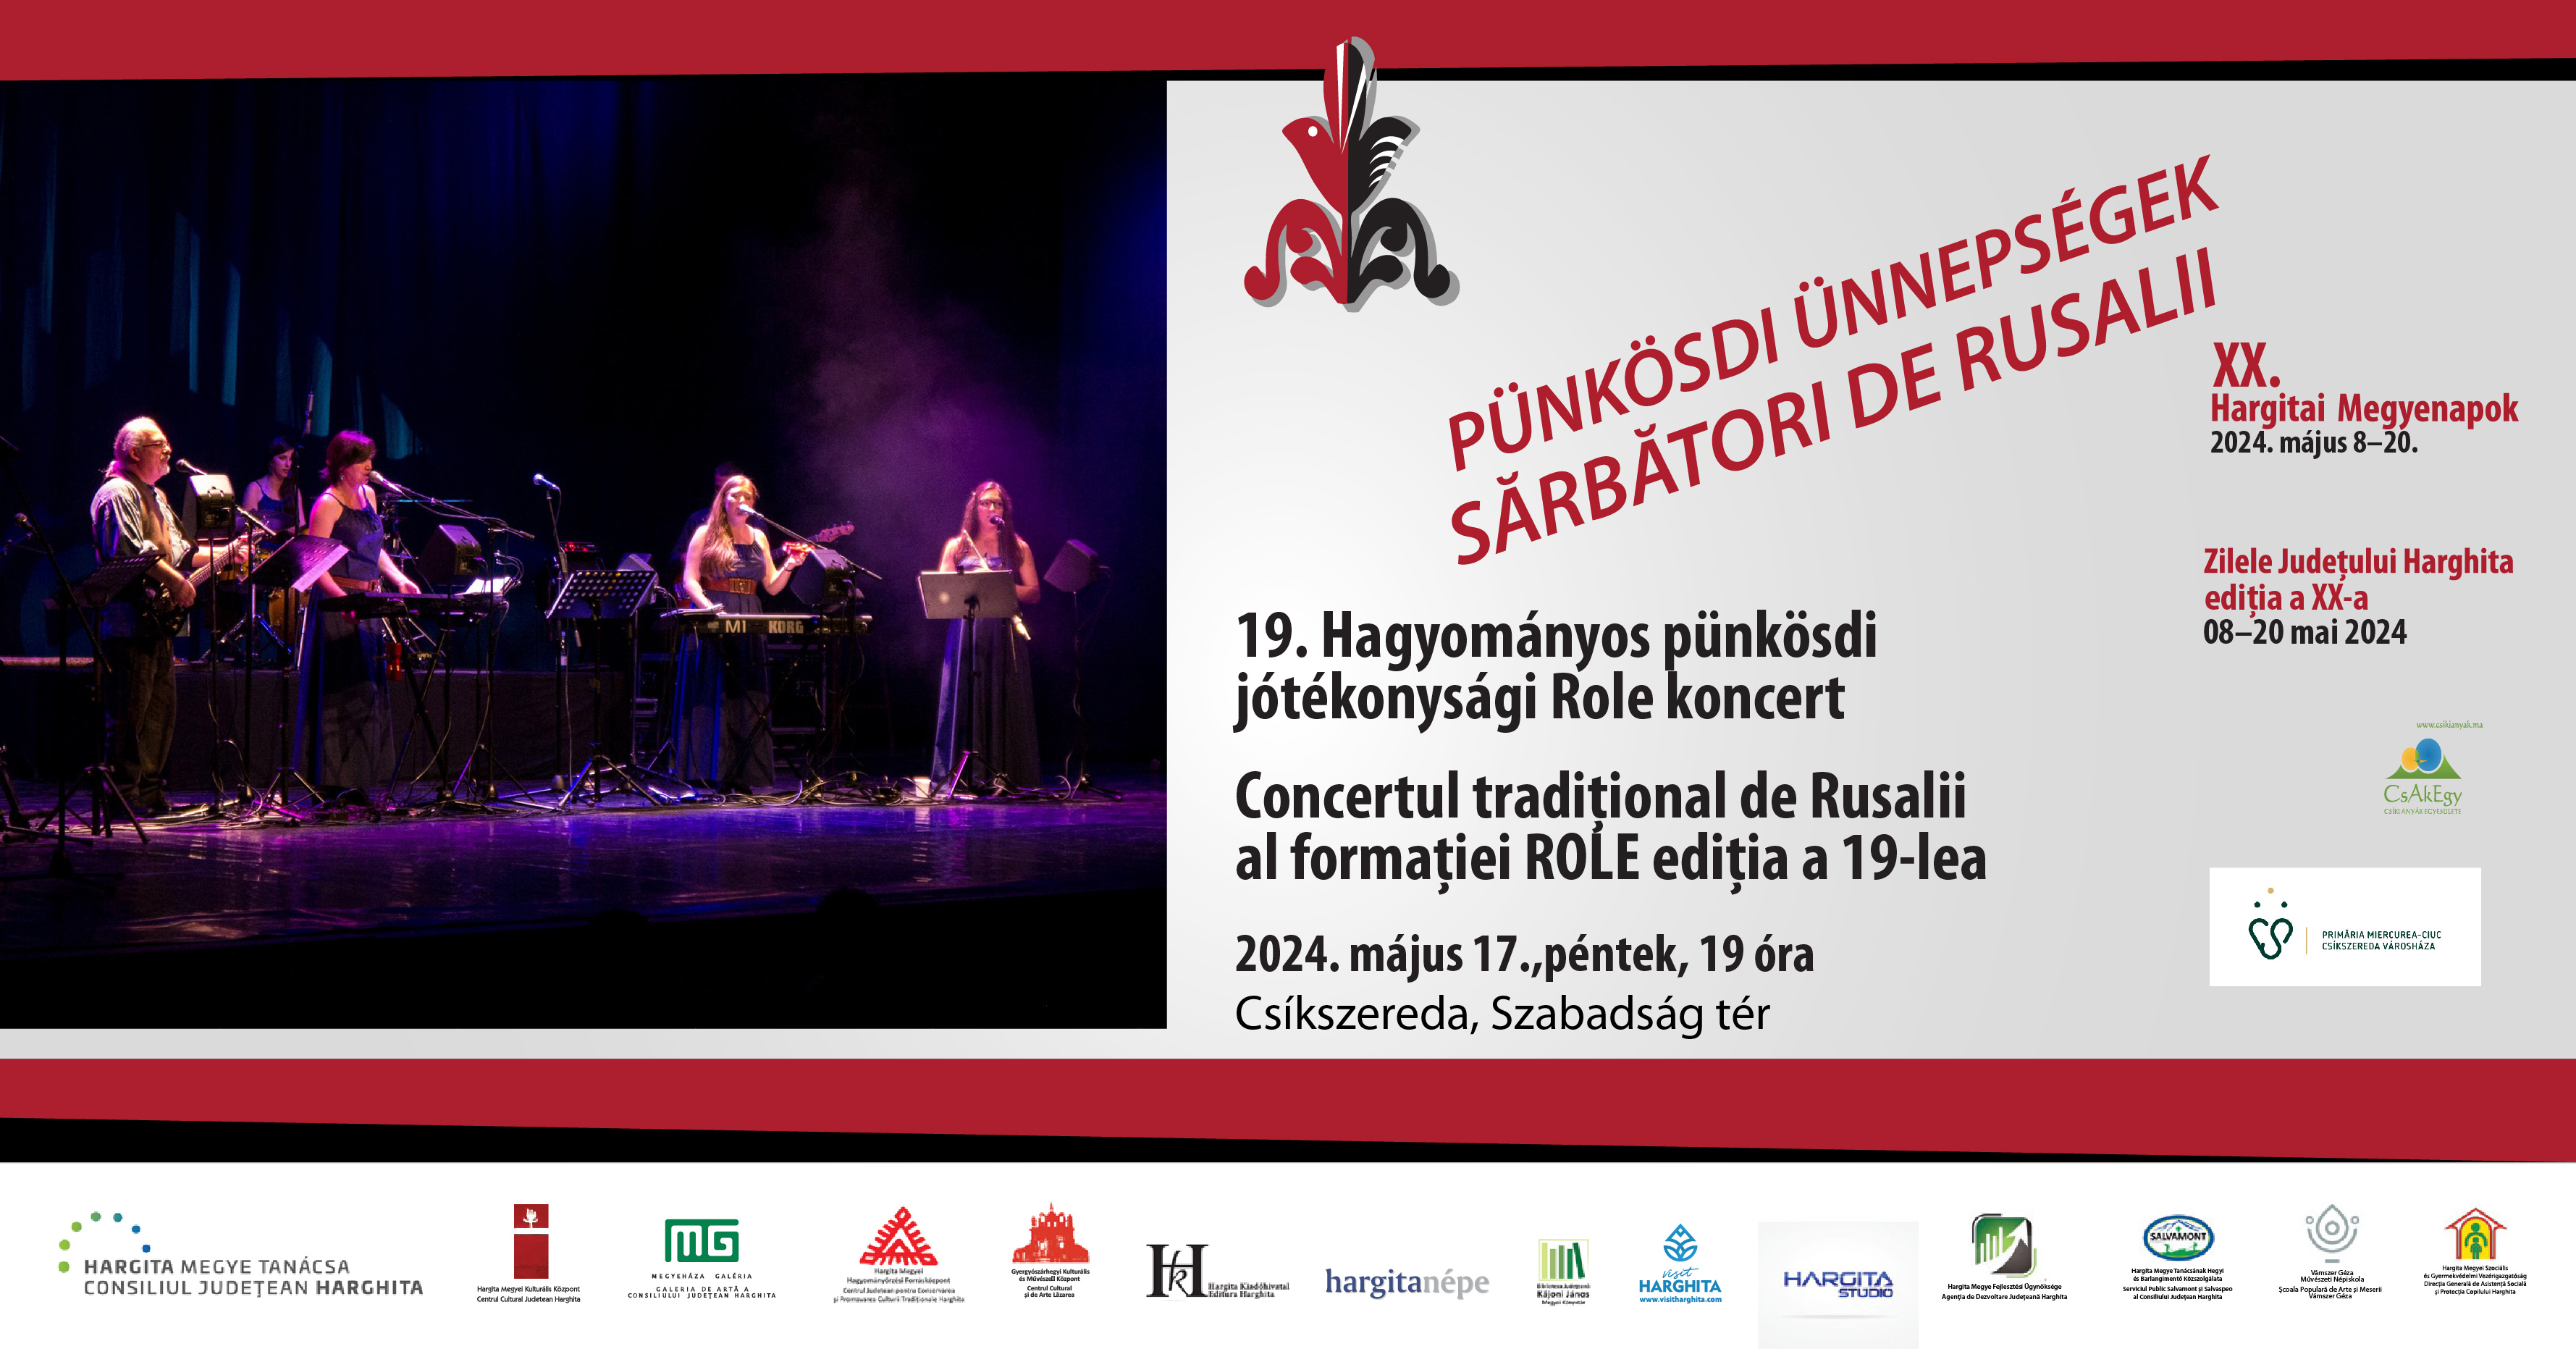 Concertul tradițional de Rusalii al formației ROLE ediția a 19-lea